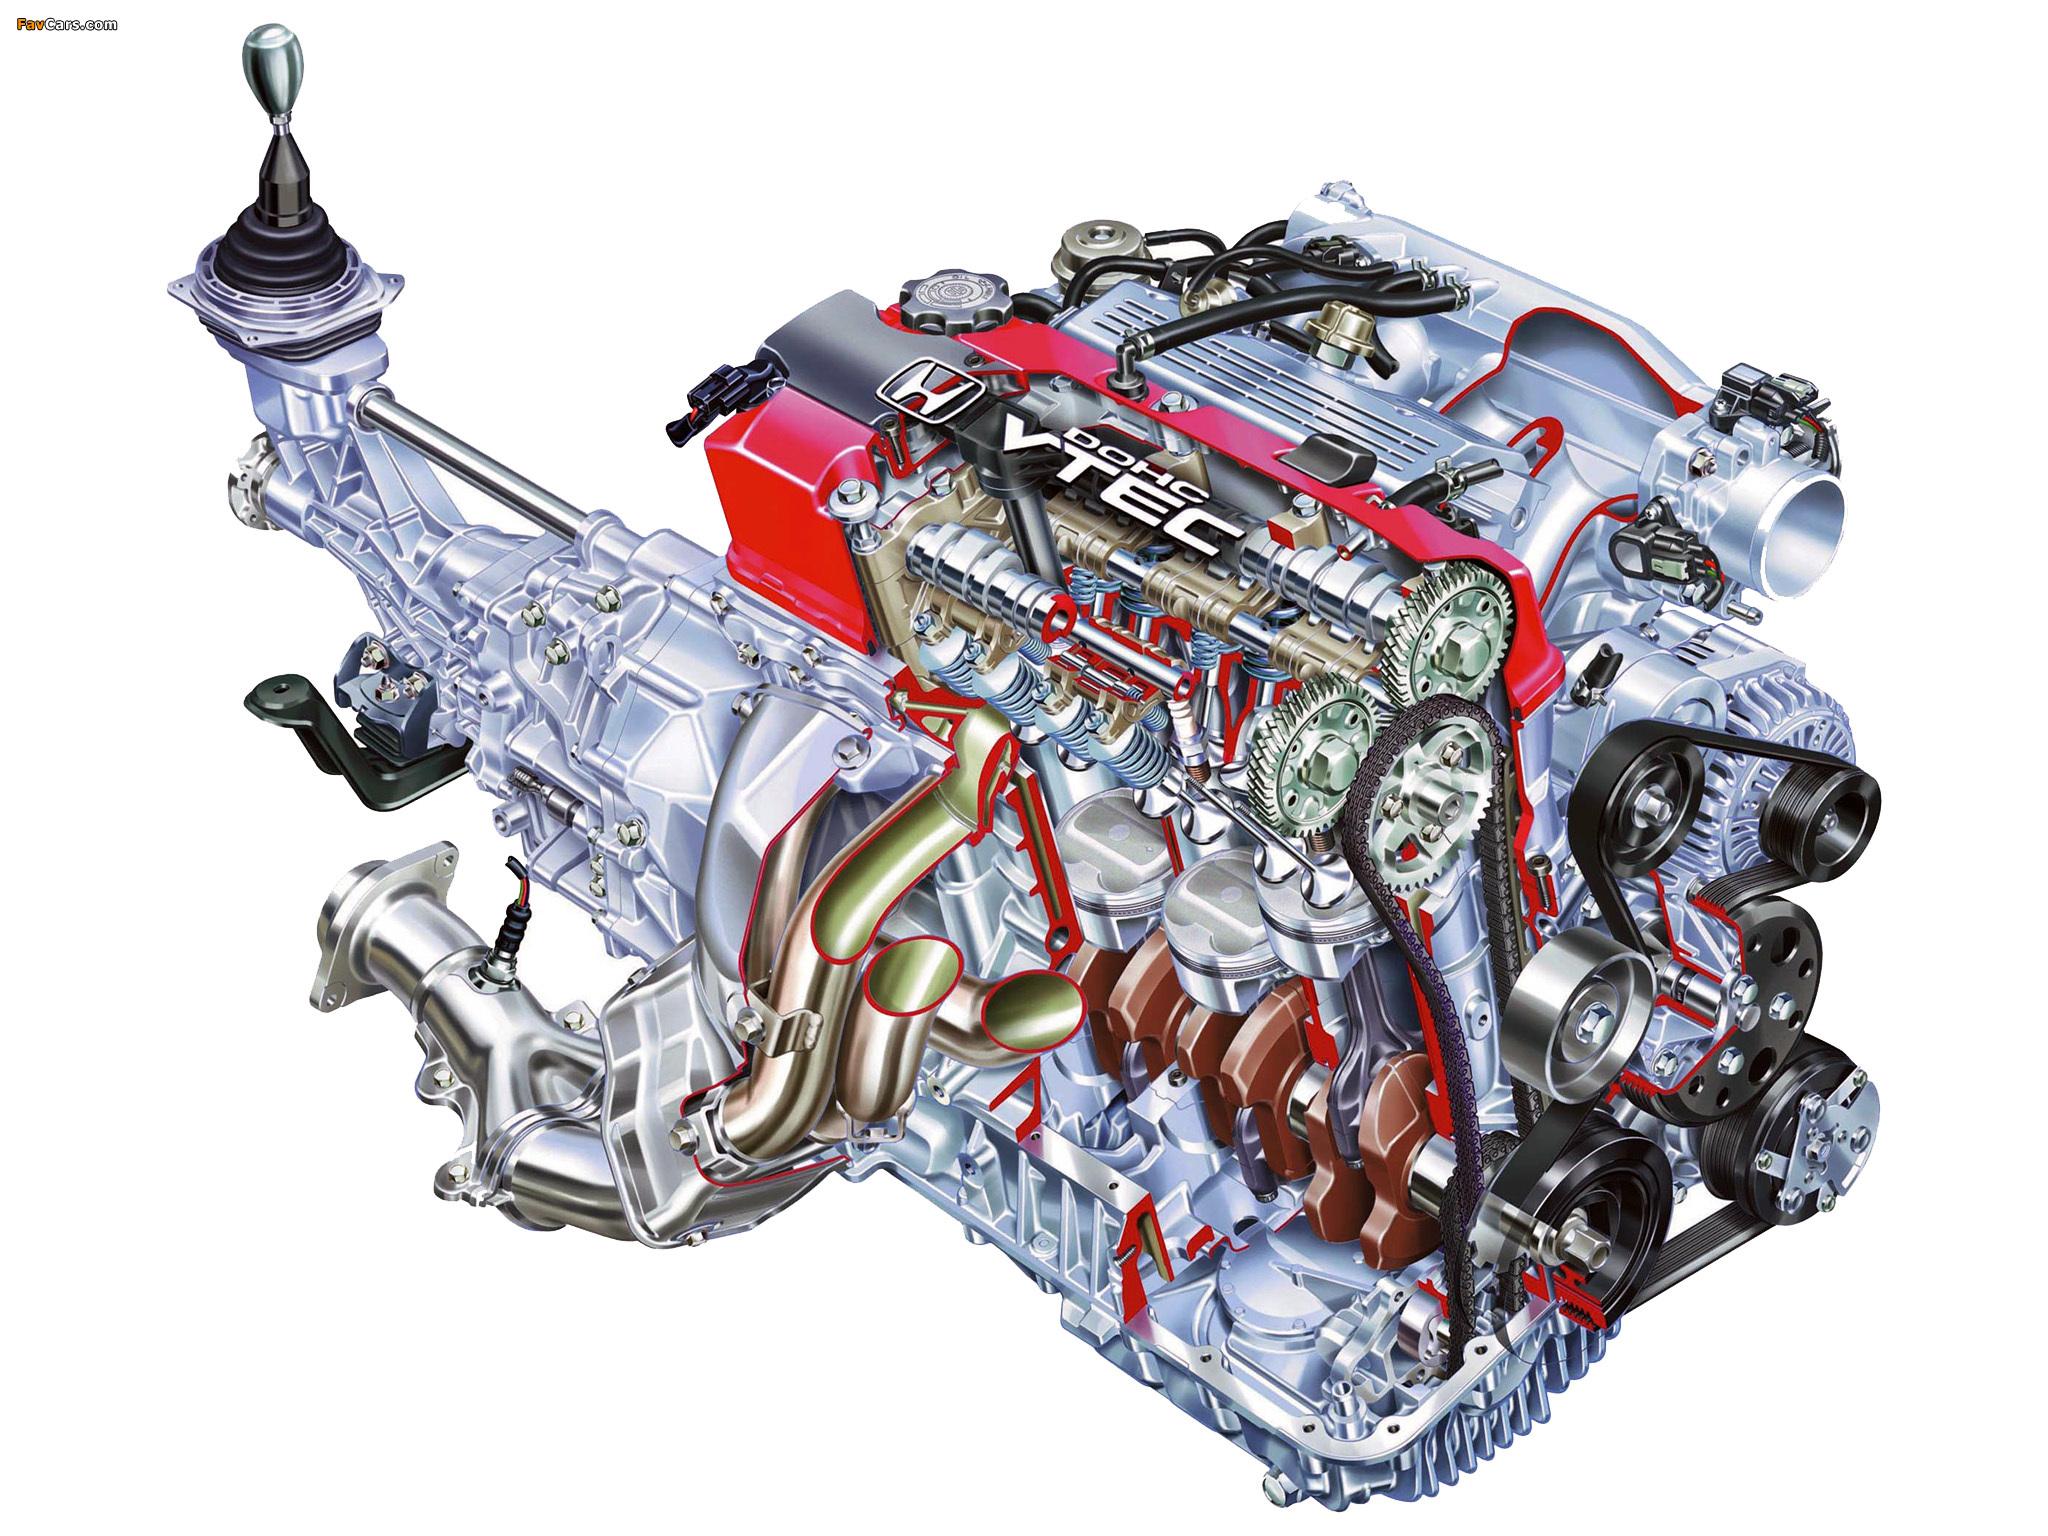 Двигатели автомобиля хонда. Двигатели Honda f20c. Honda s2000 мотор. Honda s2000 двигатель f20c. Двигатель f20c Хонда.